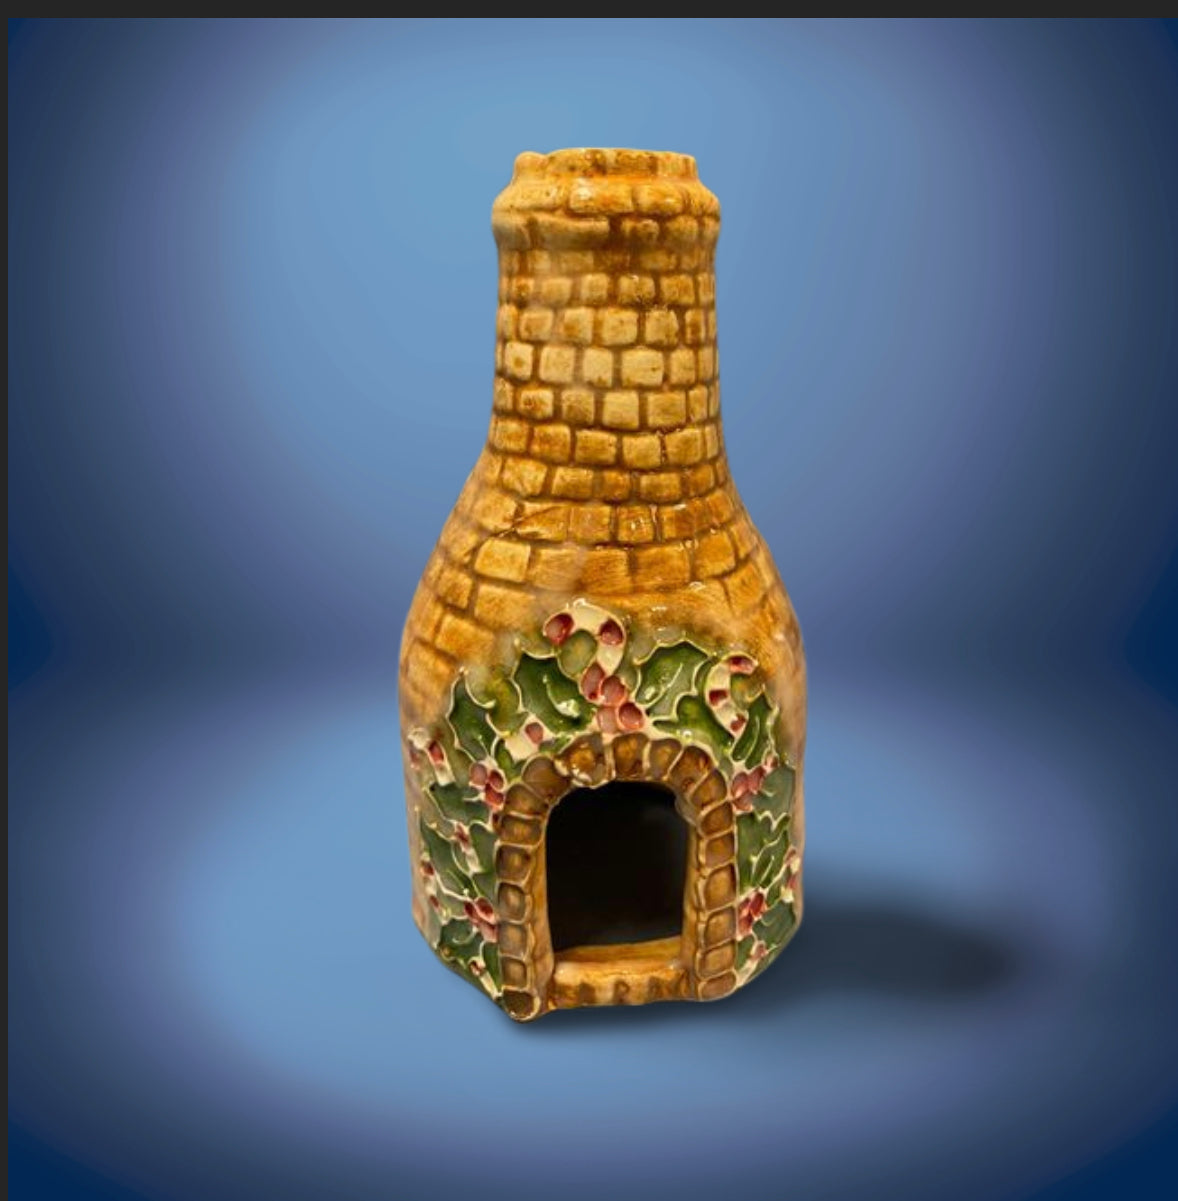 Bottle kiln Christmas design medium 13cm